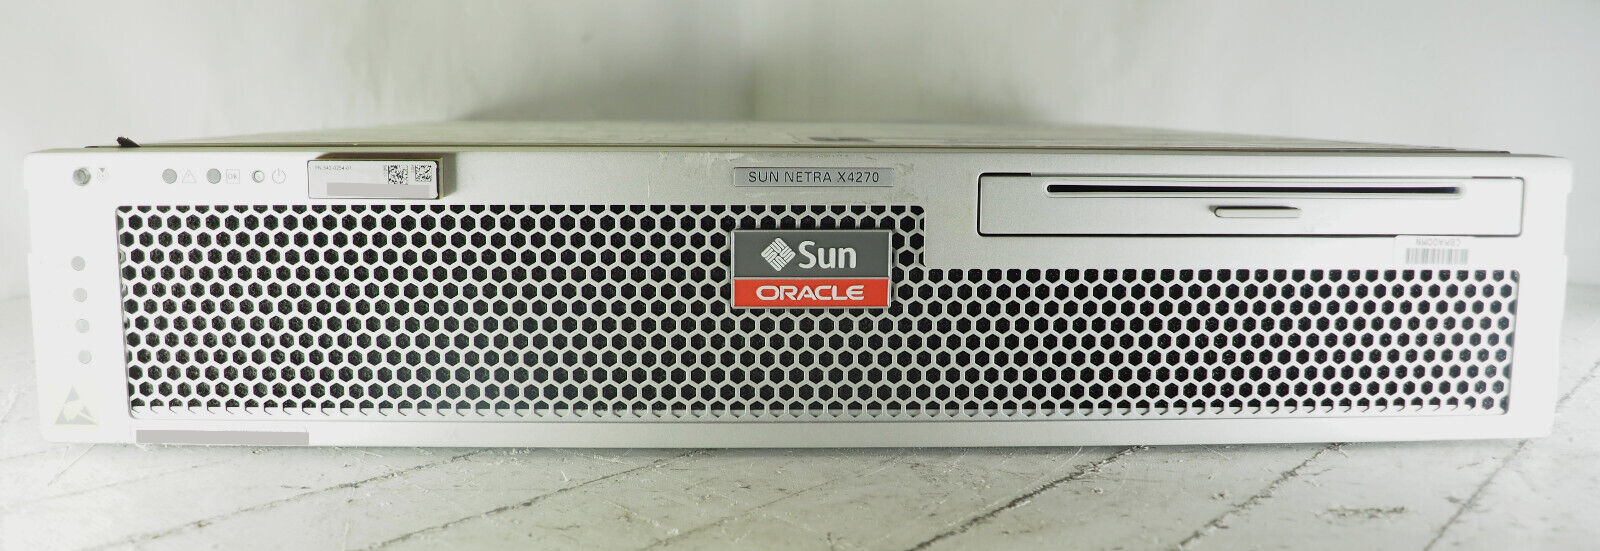 SUN Oracle Netra X4270 2 x 2.13GHz 16GB RAM 300GB Disk 1 x PSU DVD Rails